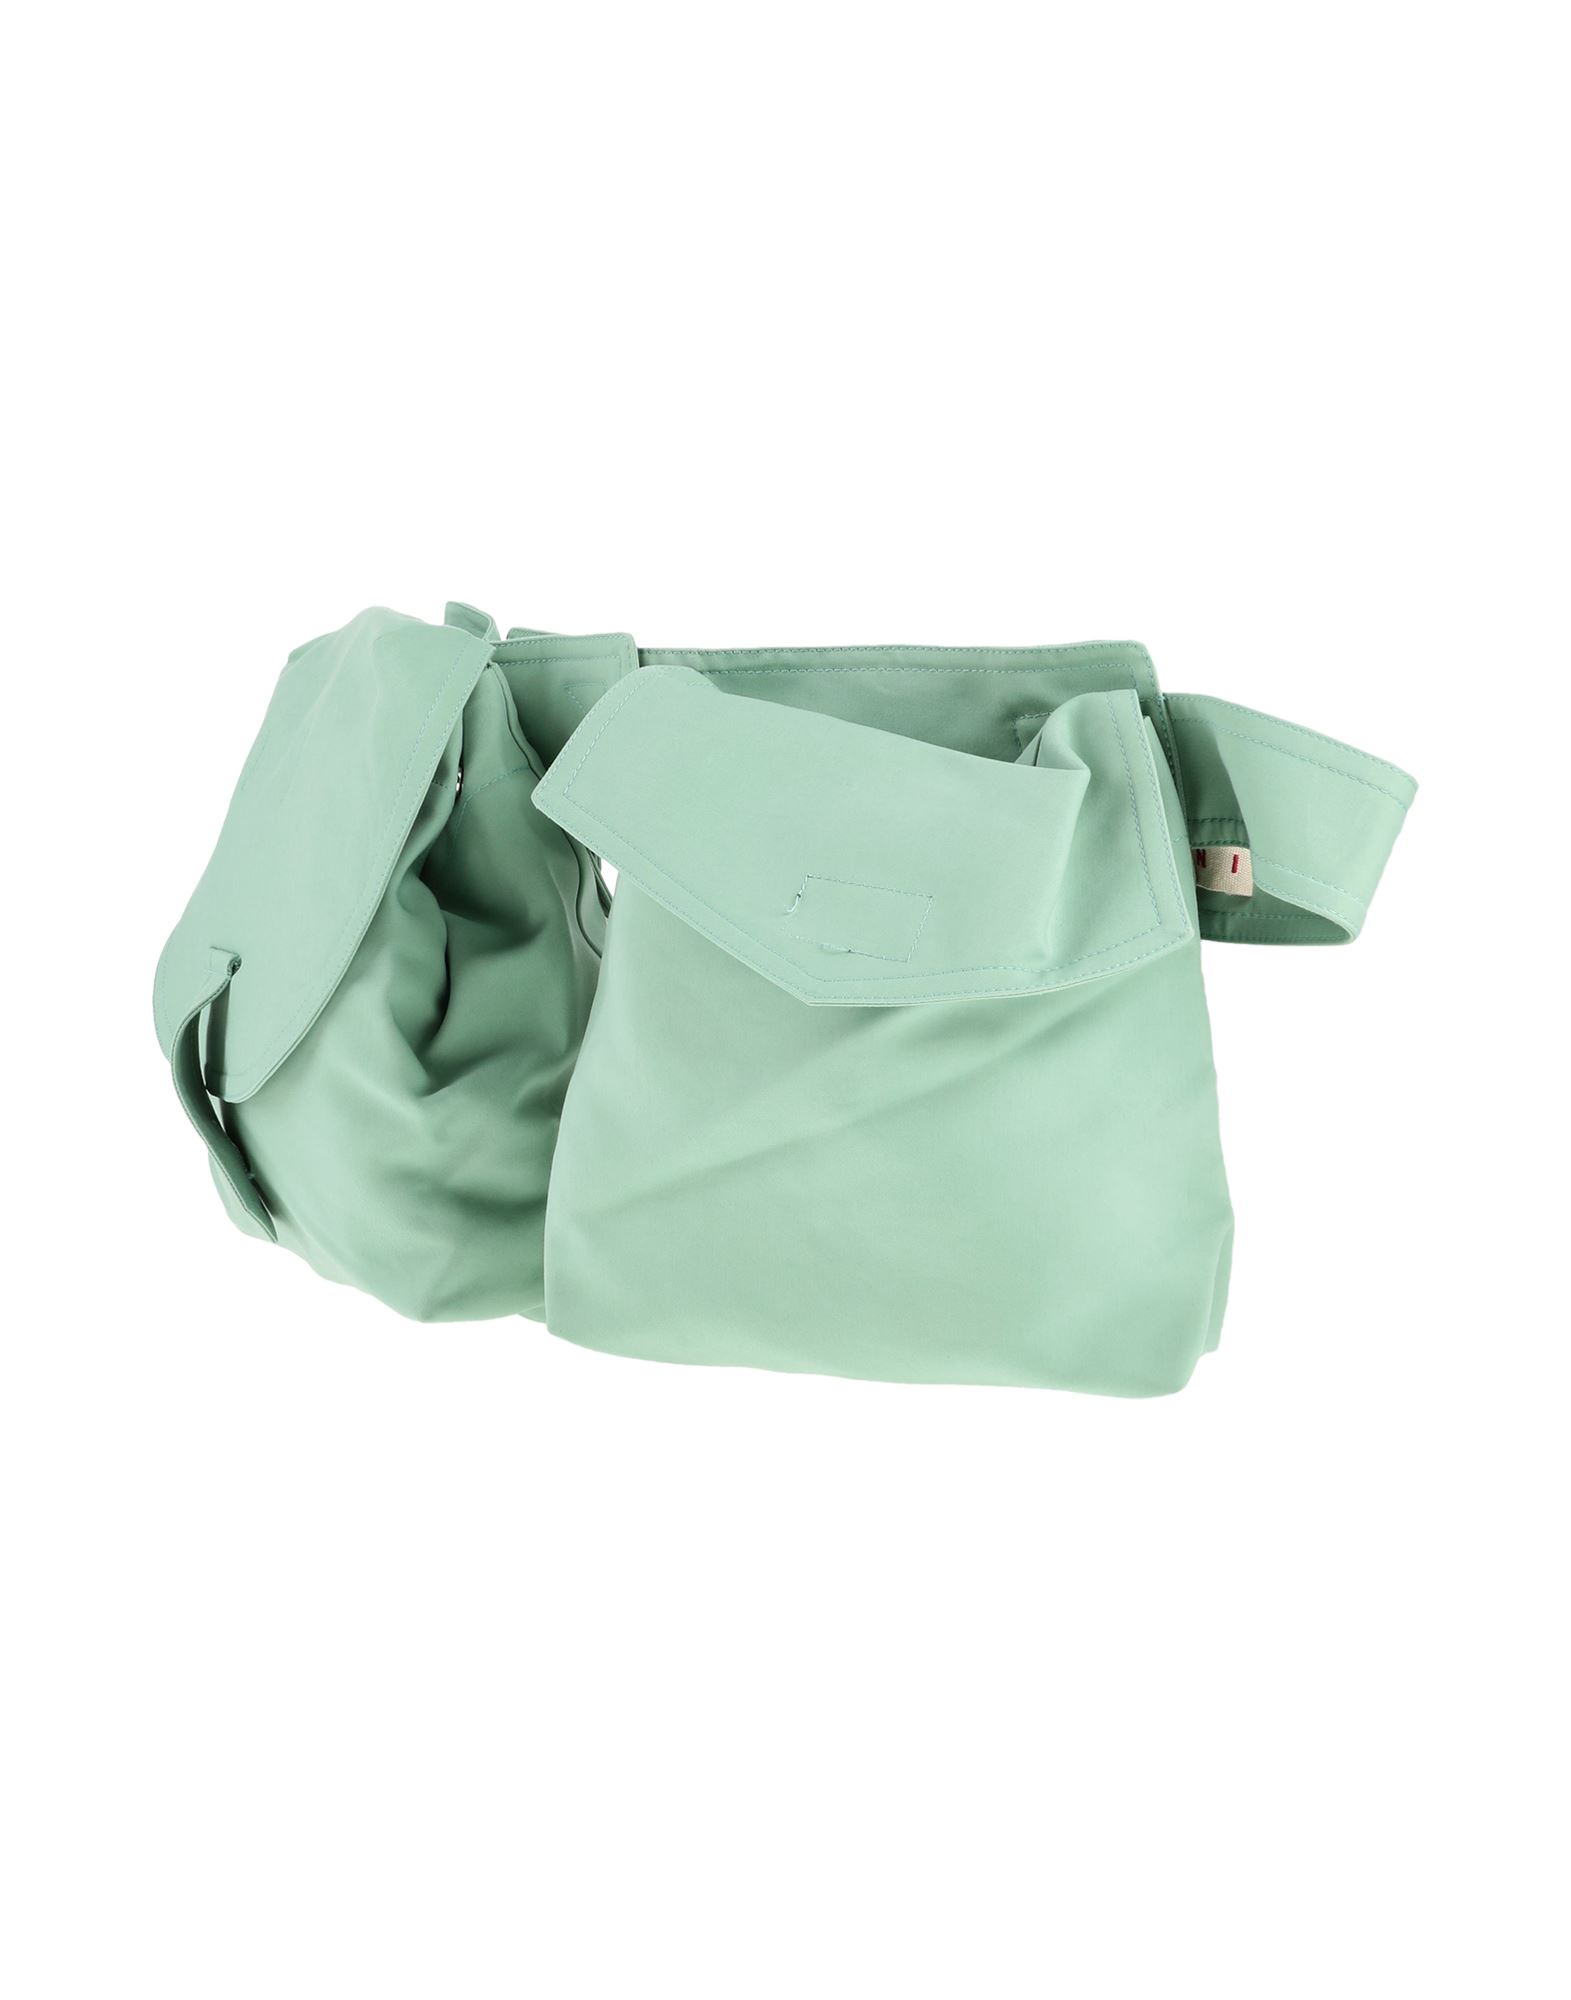 Marni Bum Bags In Light Green